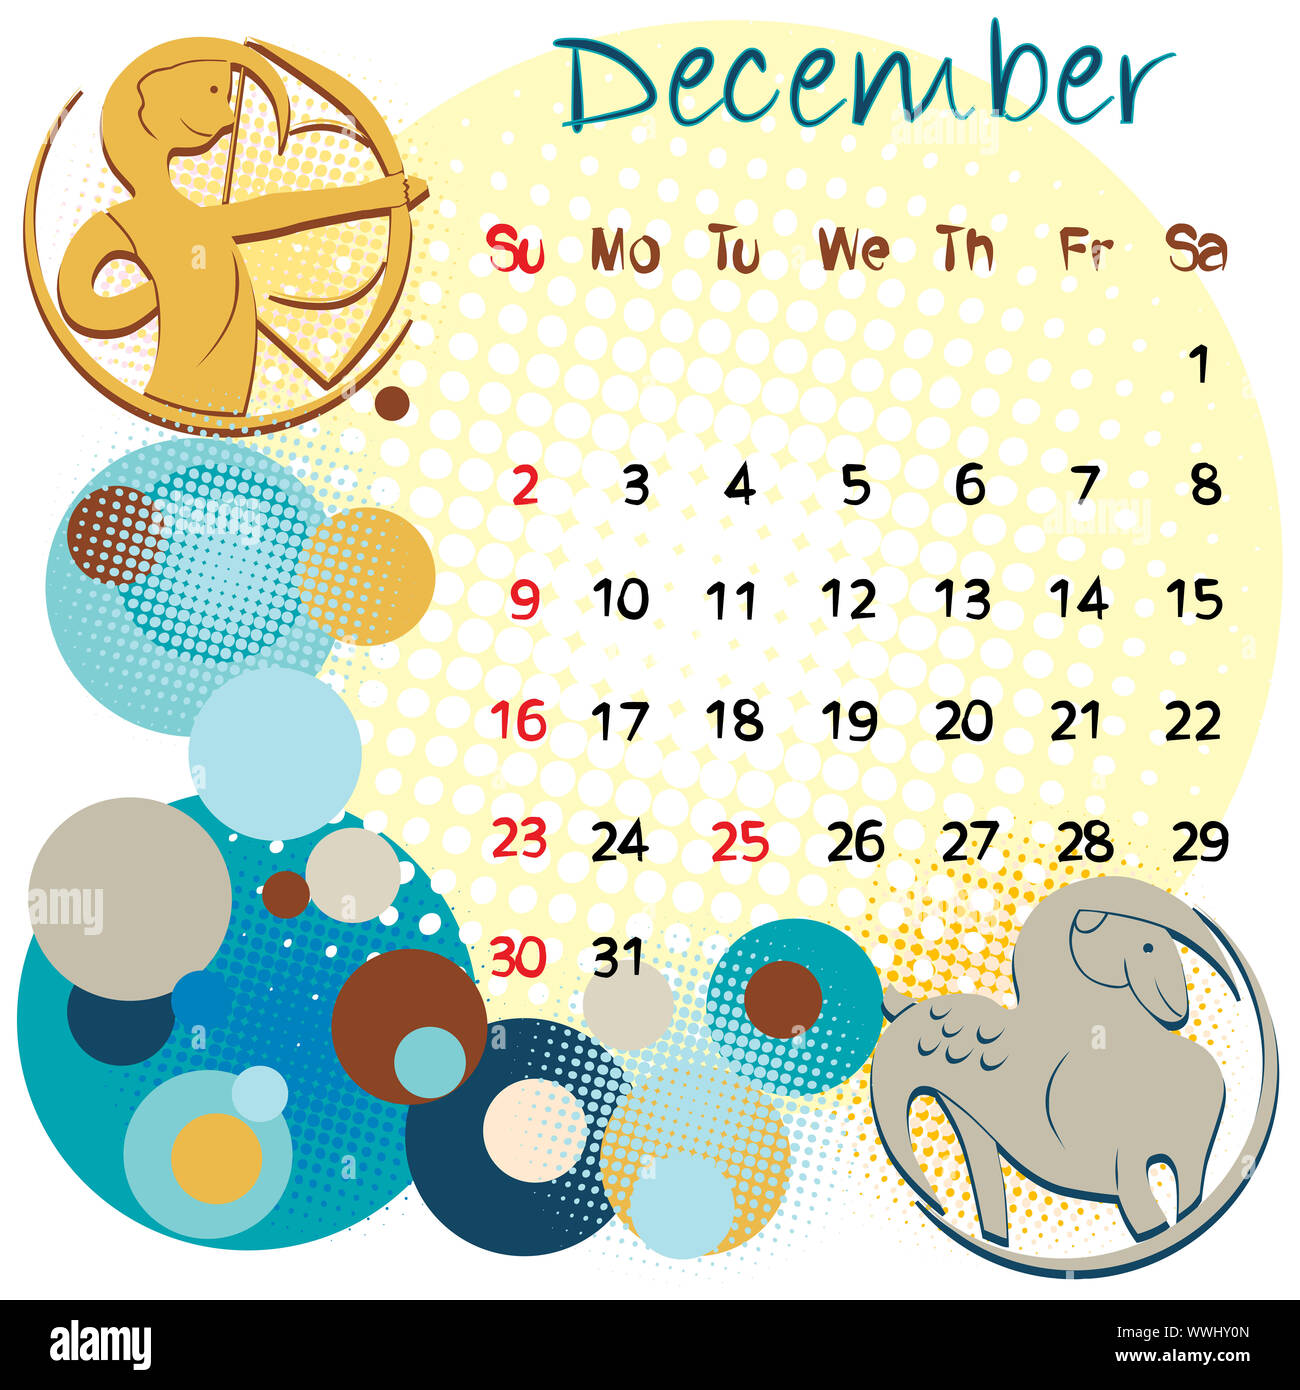 Décembre calendrier 2012 avec les signes du zodiaque et jours fériés aux États-Unis Banque D'Images